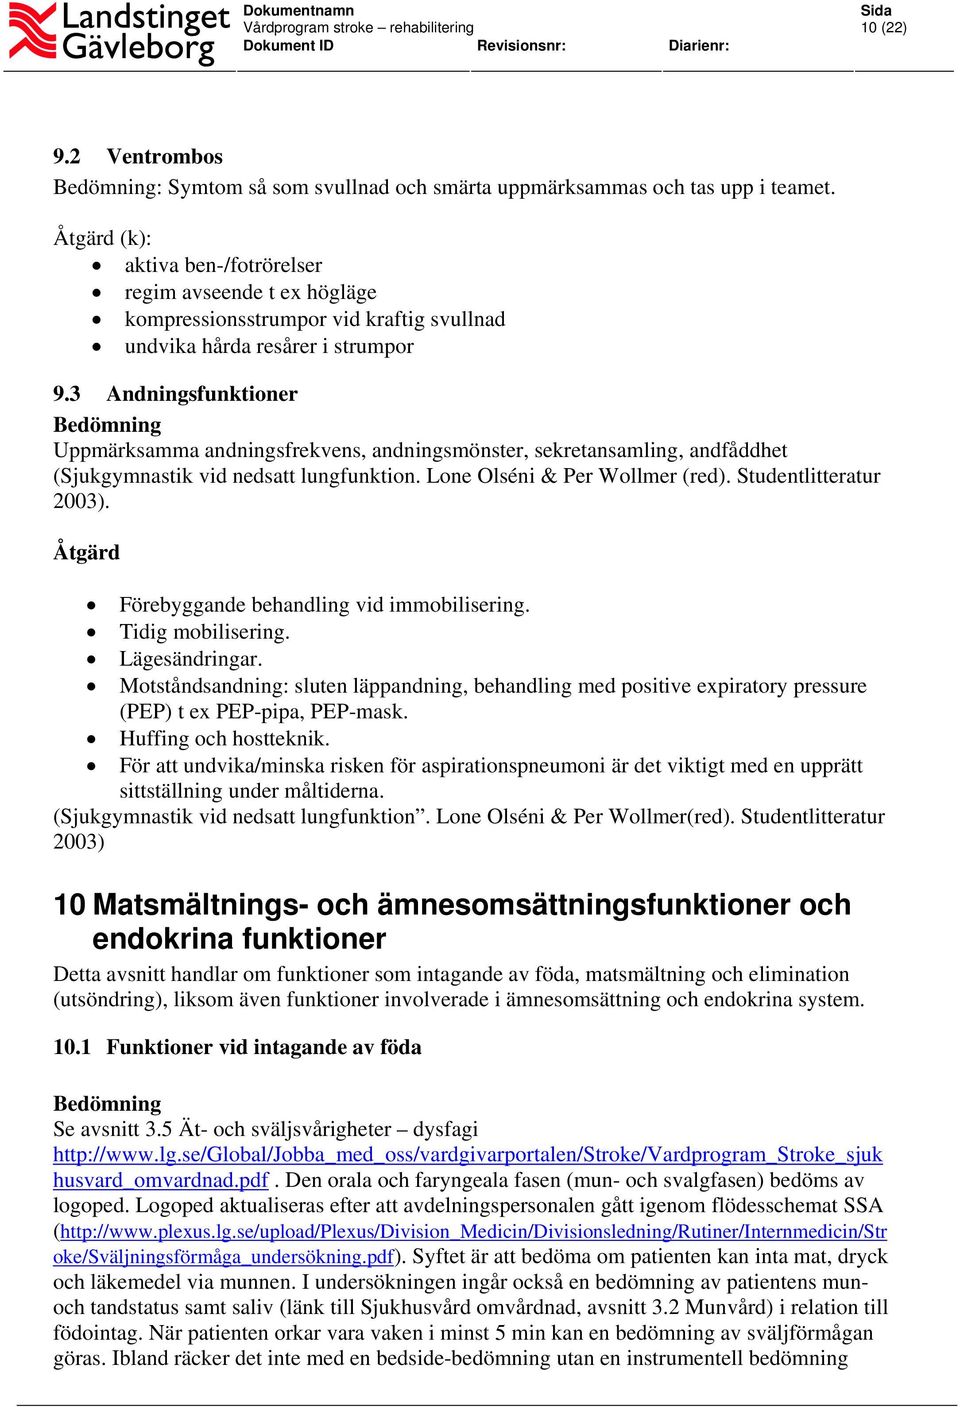 3 Andningsfunktioner Uppmärksamma andningsfrekvens, andningsmönster, sekretansamling, andfåddhet (Sjukgymnastik vid nedsatt lungfunktion. Lone Olséni & Per Wollmer (red). Studentlitteratur 2003).